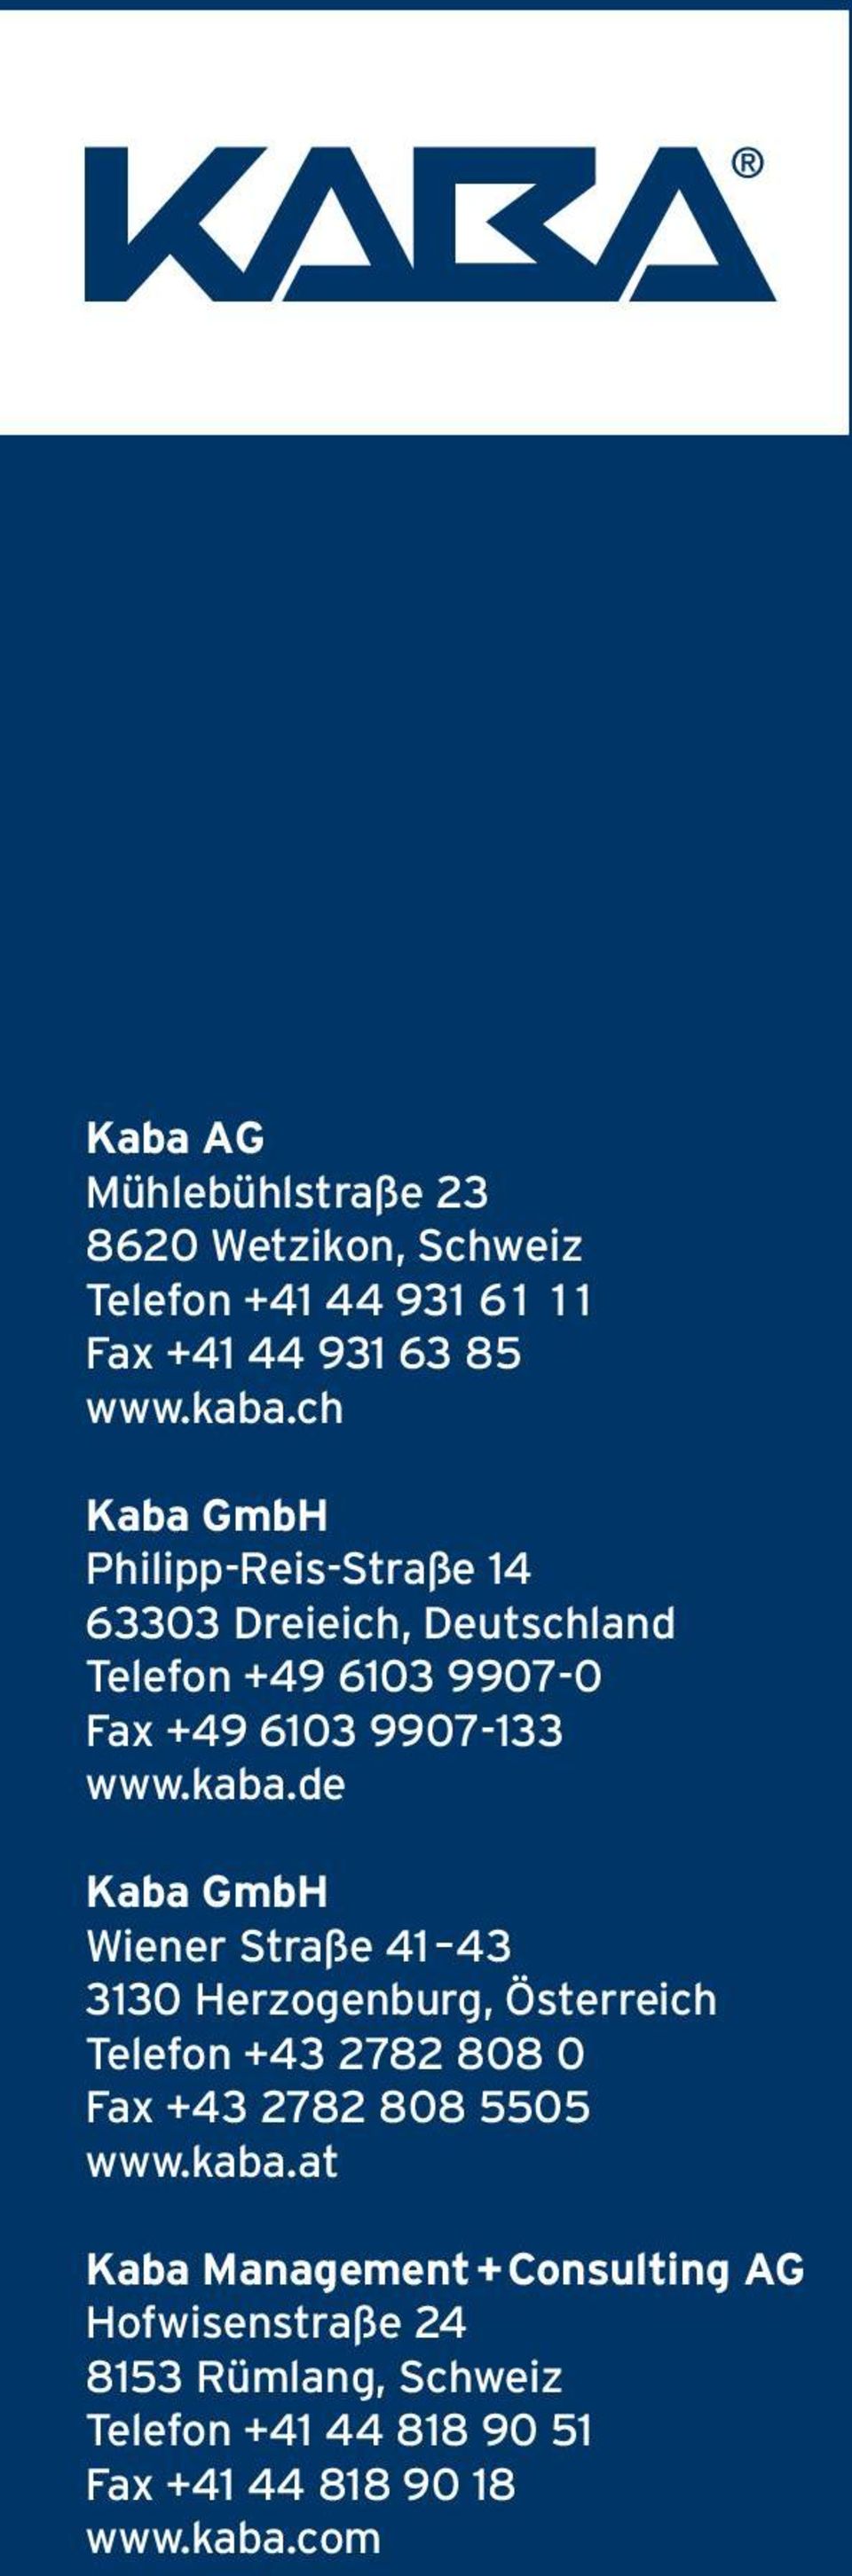 de Kaba GmbH Wiener Straße 41 43 3130 Herzogenburg, Österreich Telefon +43 2782 808 0 Fax +43 2782 808 5505 www.kaba.